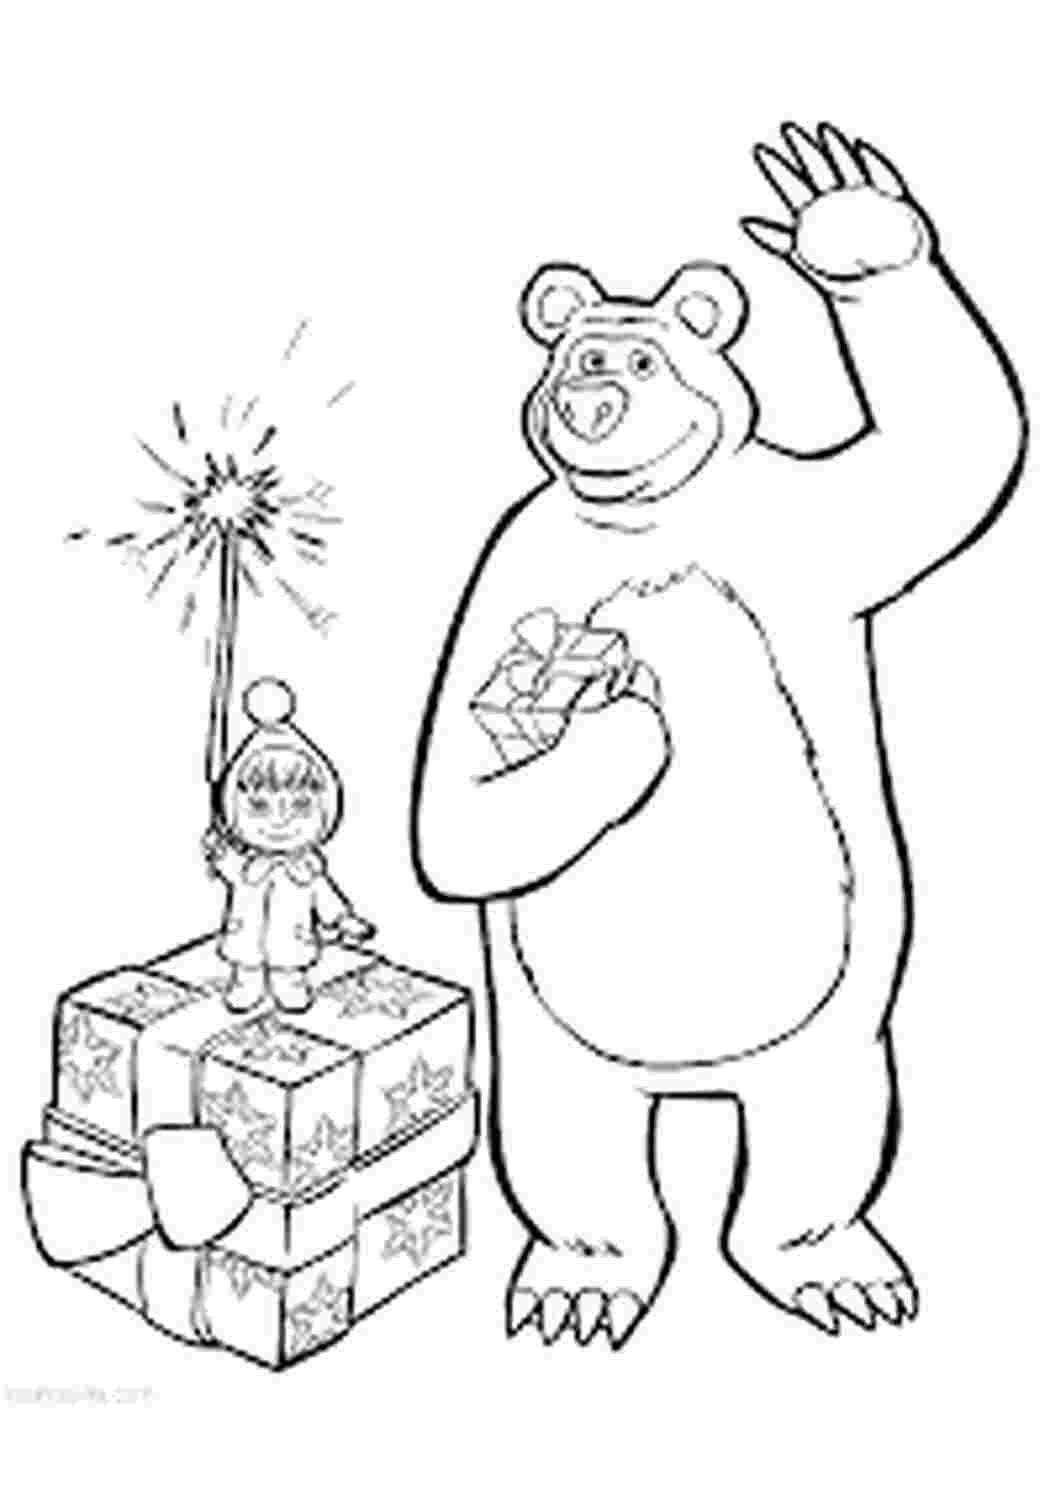 Раскраски  раскраски на тему маша и медведь               раскраски на тему маша и медведь для мальчиков и девочек. Интересные раскраски с персонажами мультфильма маша и медведь для детей           